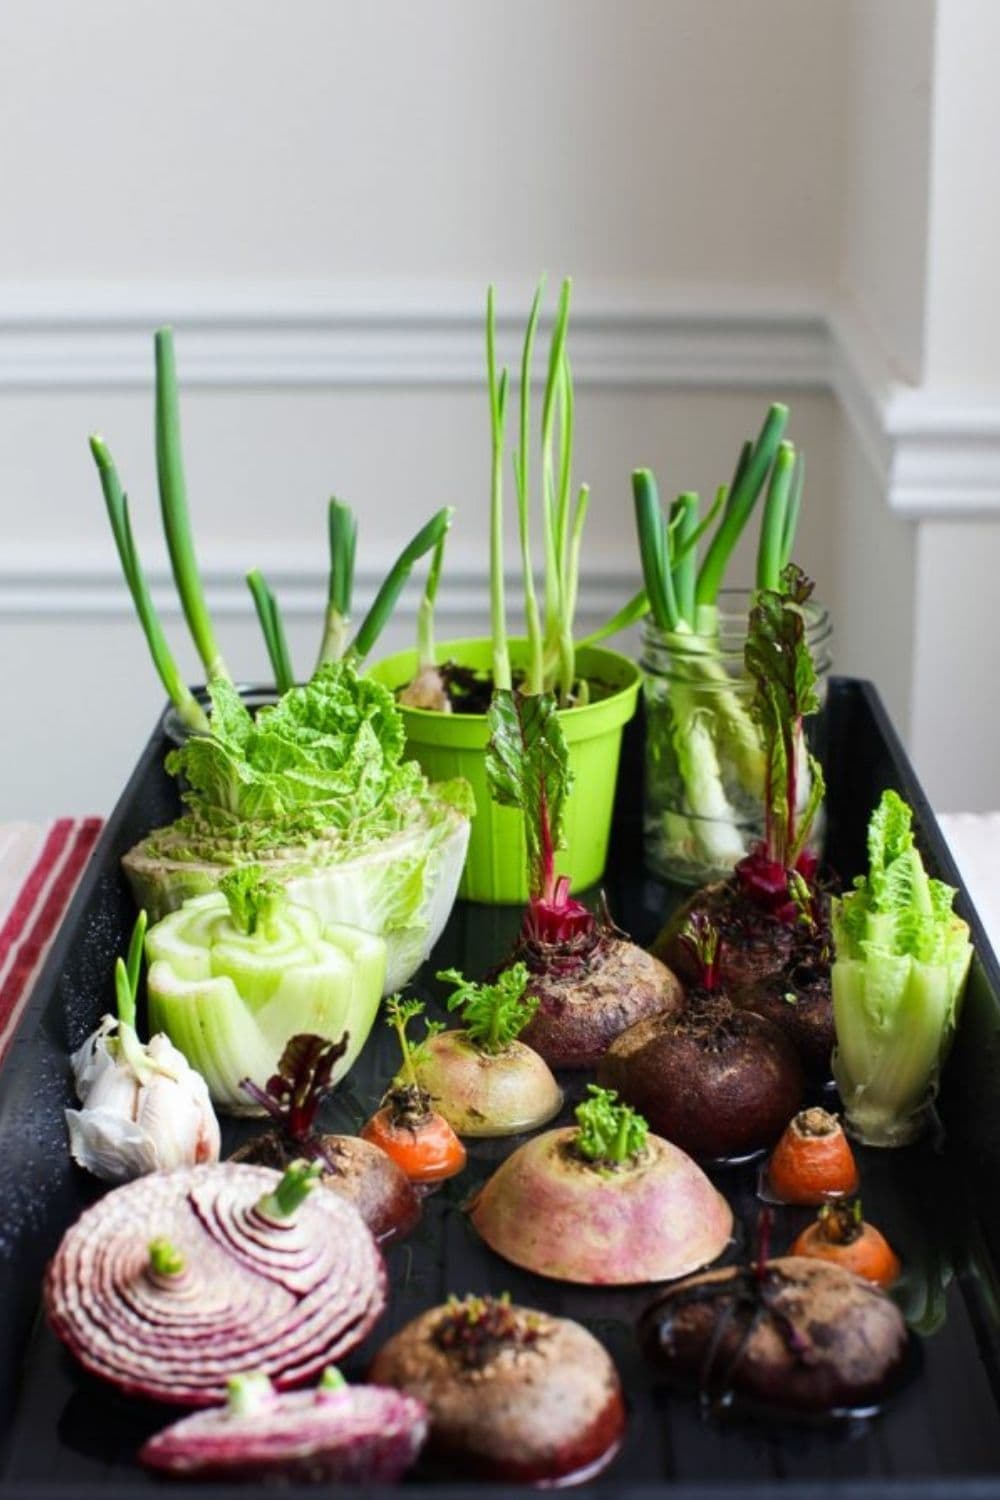  17 légumes, fruits et herbes que vous pouvez facilement faire repousser en utilisant des restes de nourriture